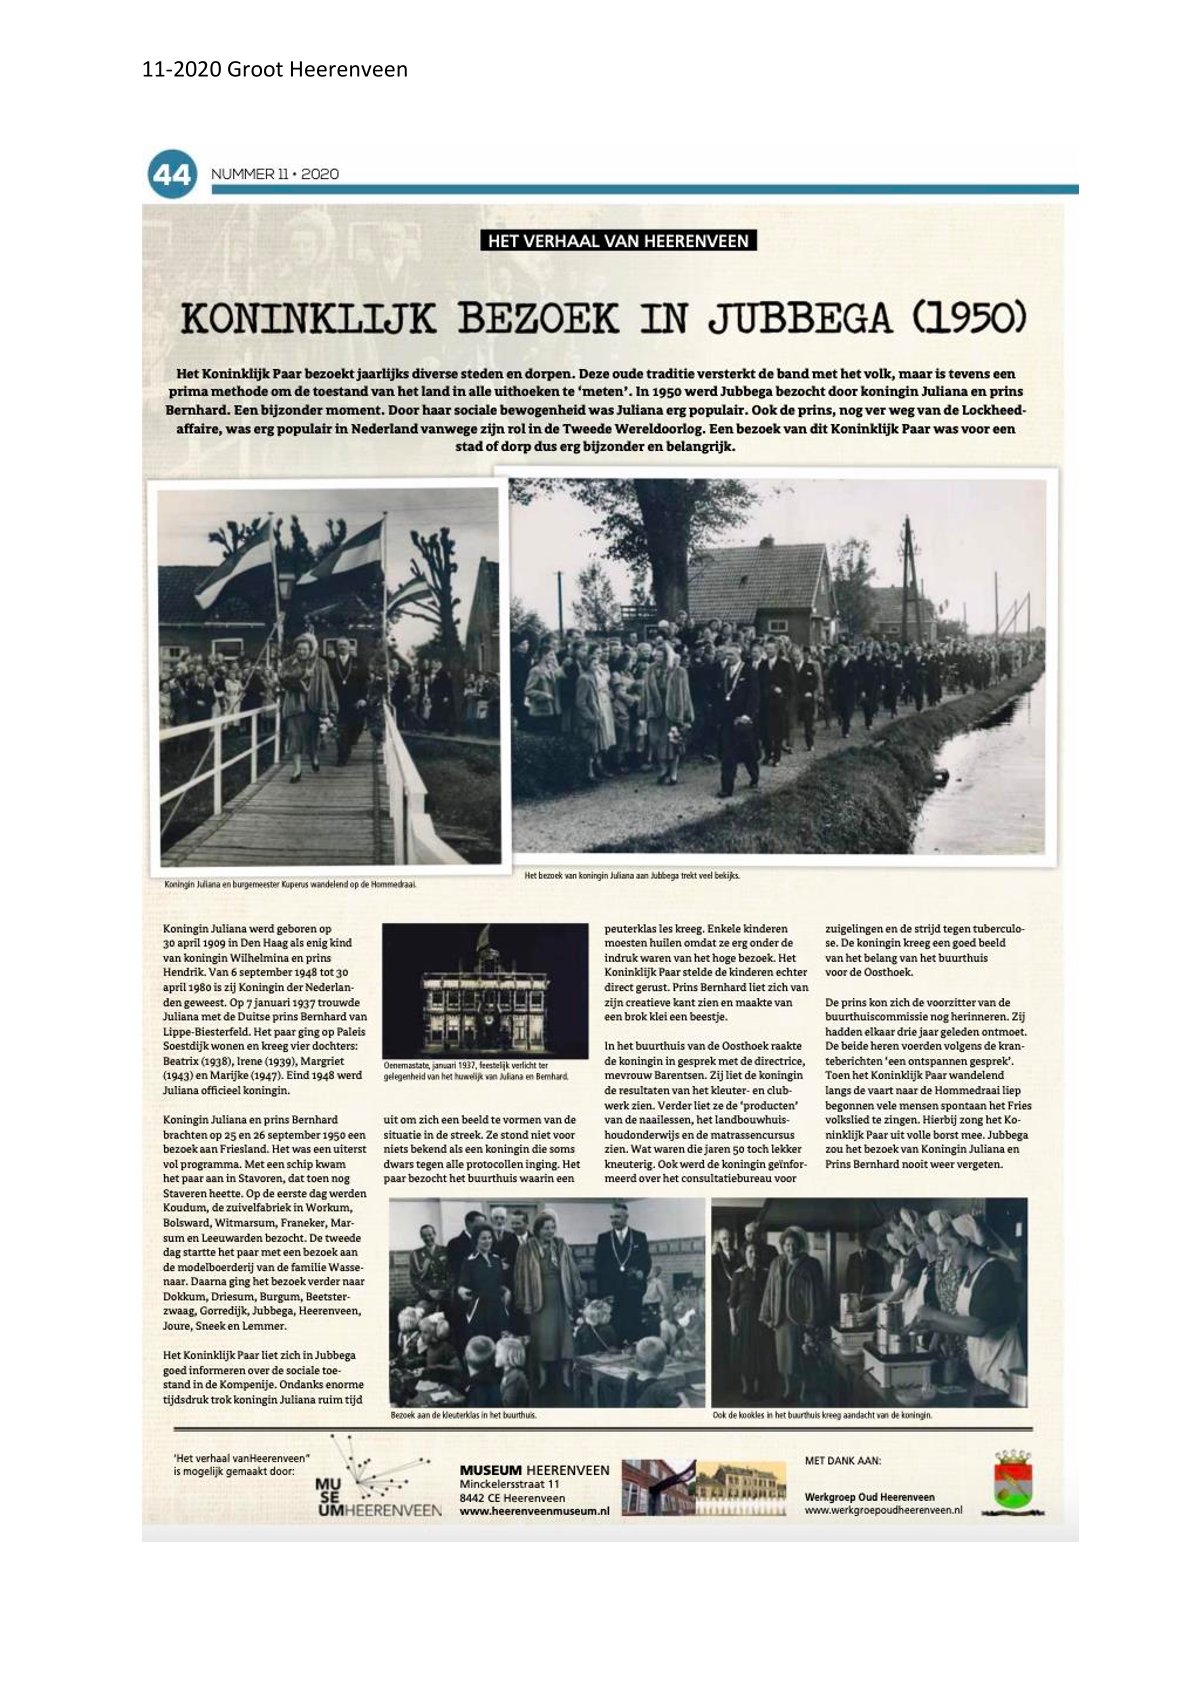 Koninklijk bezoek aan Jubbega 1950